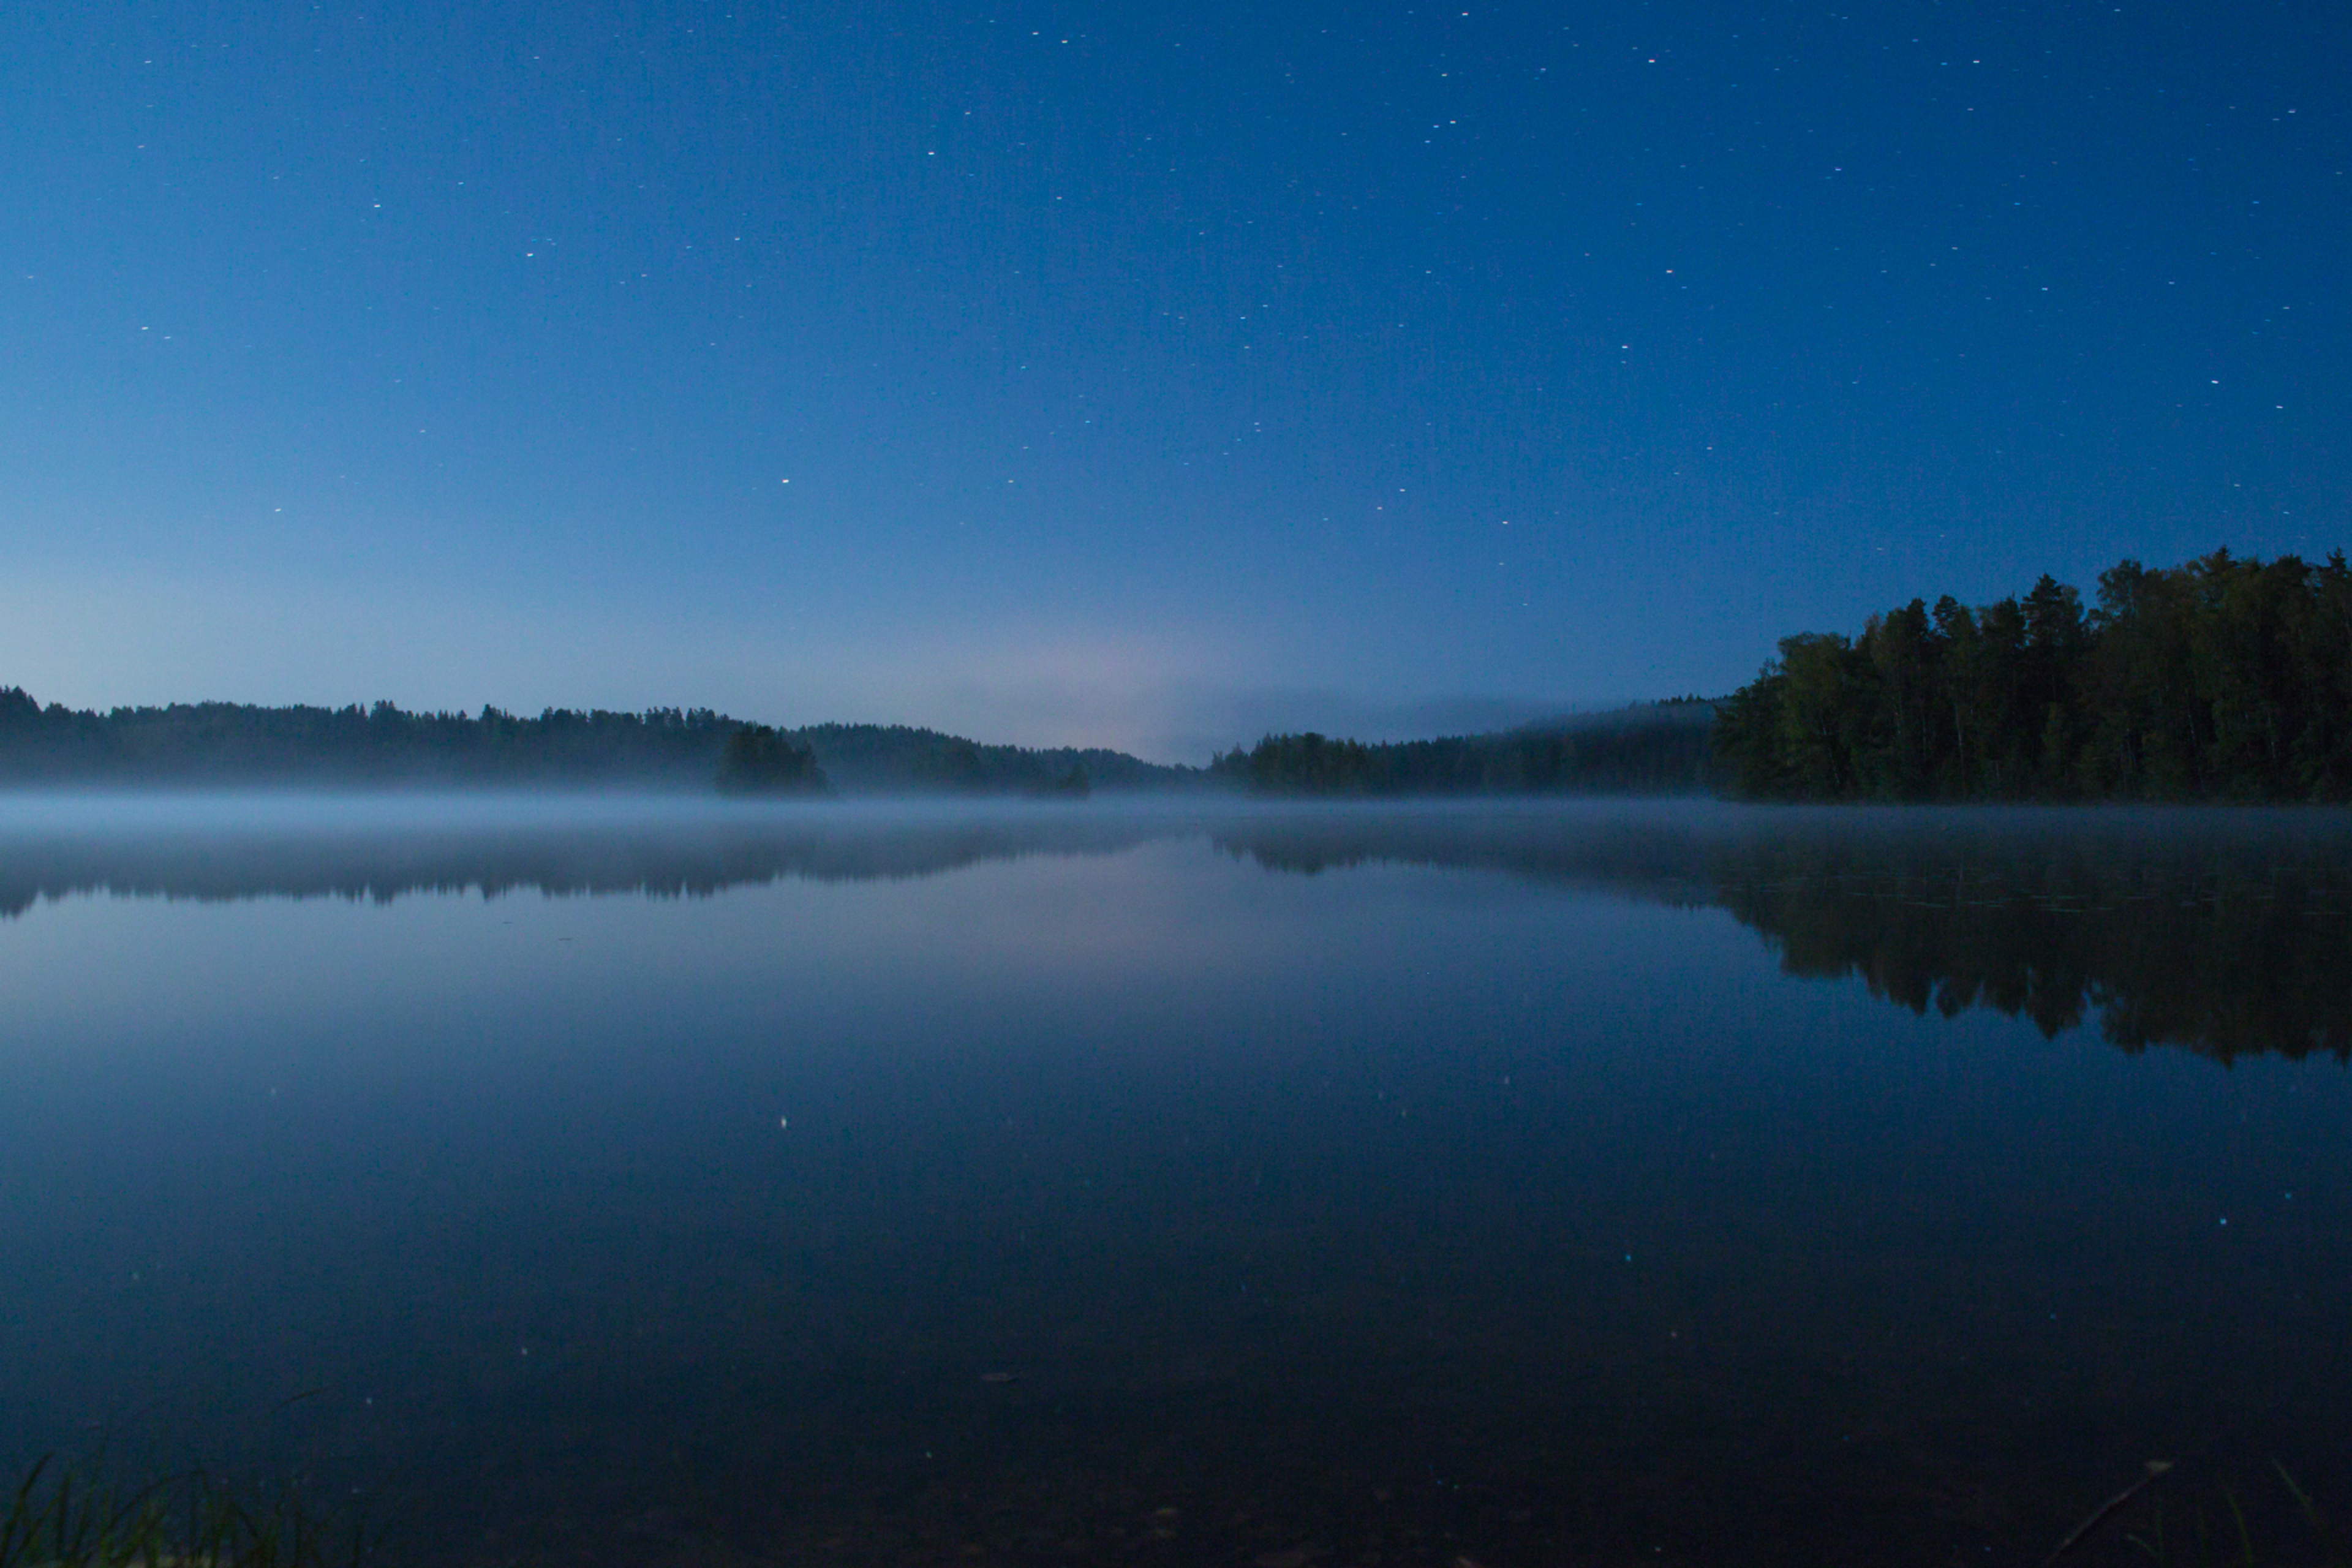 Night Lake - Joel Hypenによって作成されましたphoto付き